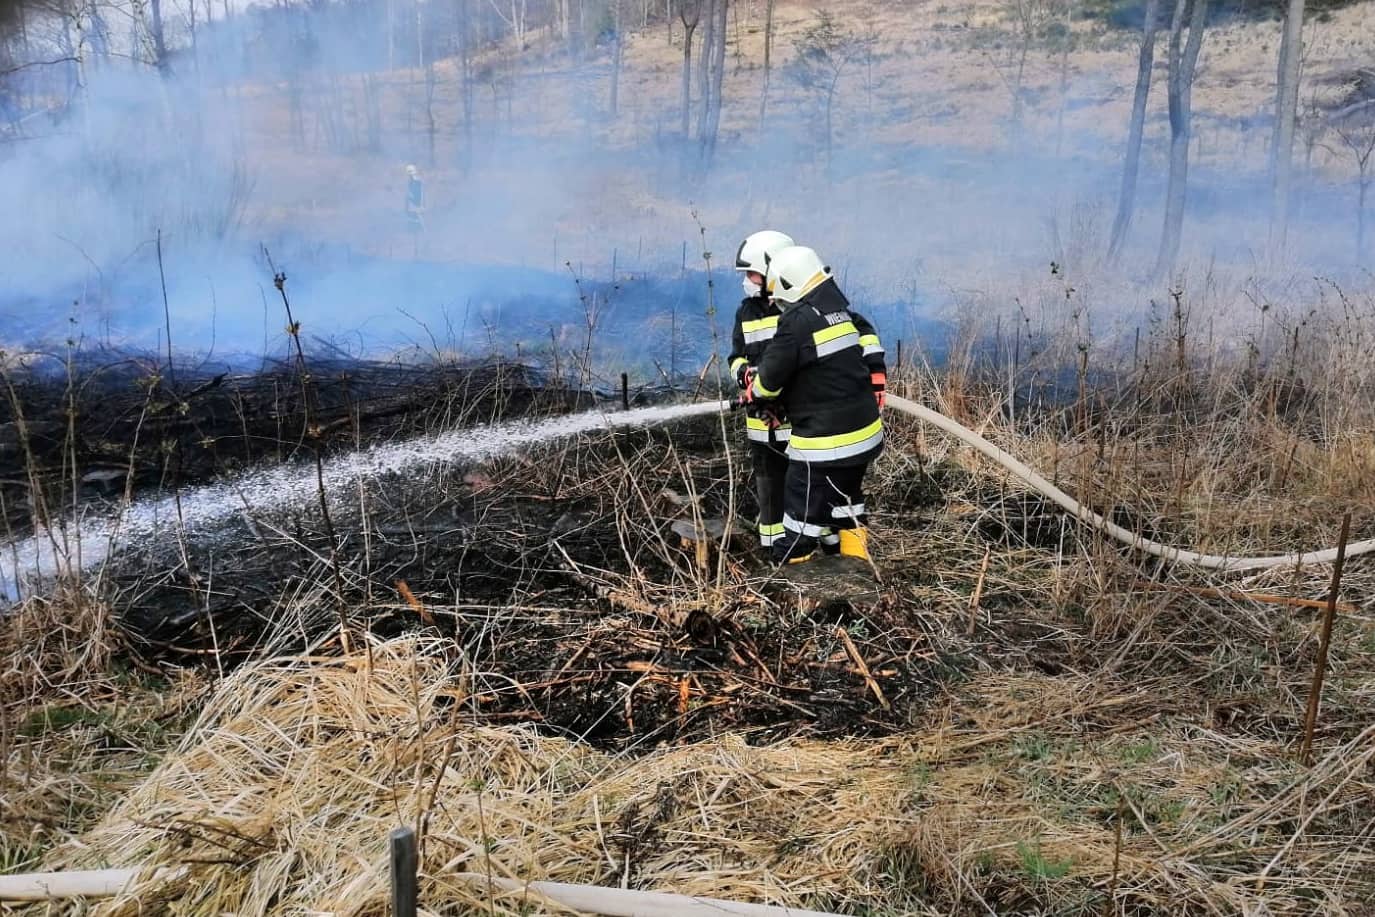 135 Feuerwehrleute verhindern zwei Großbrände